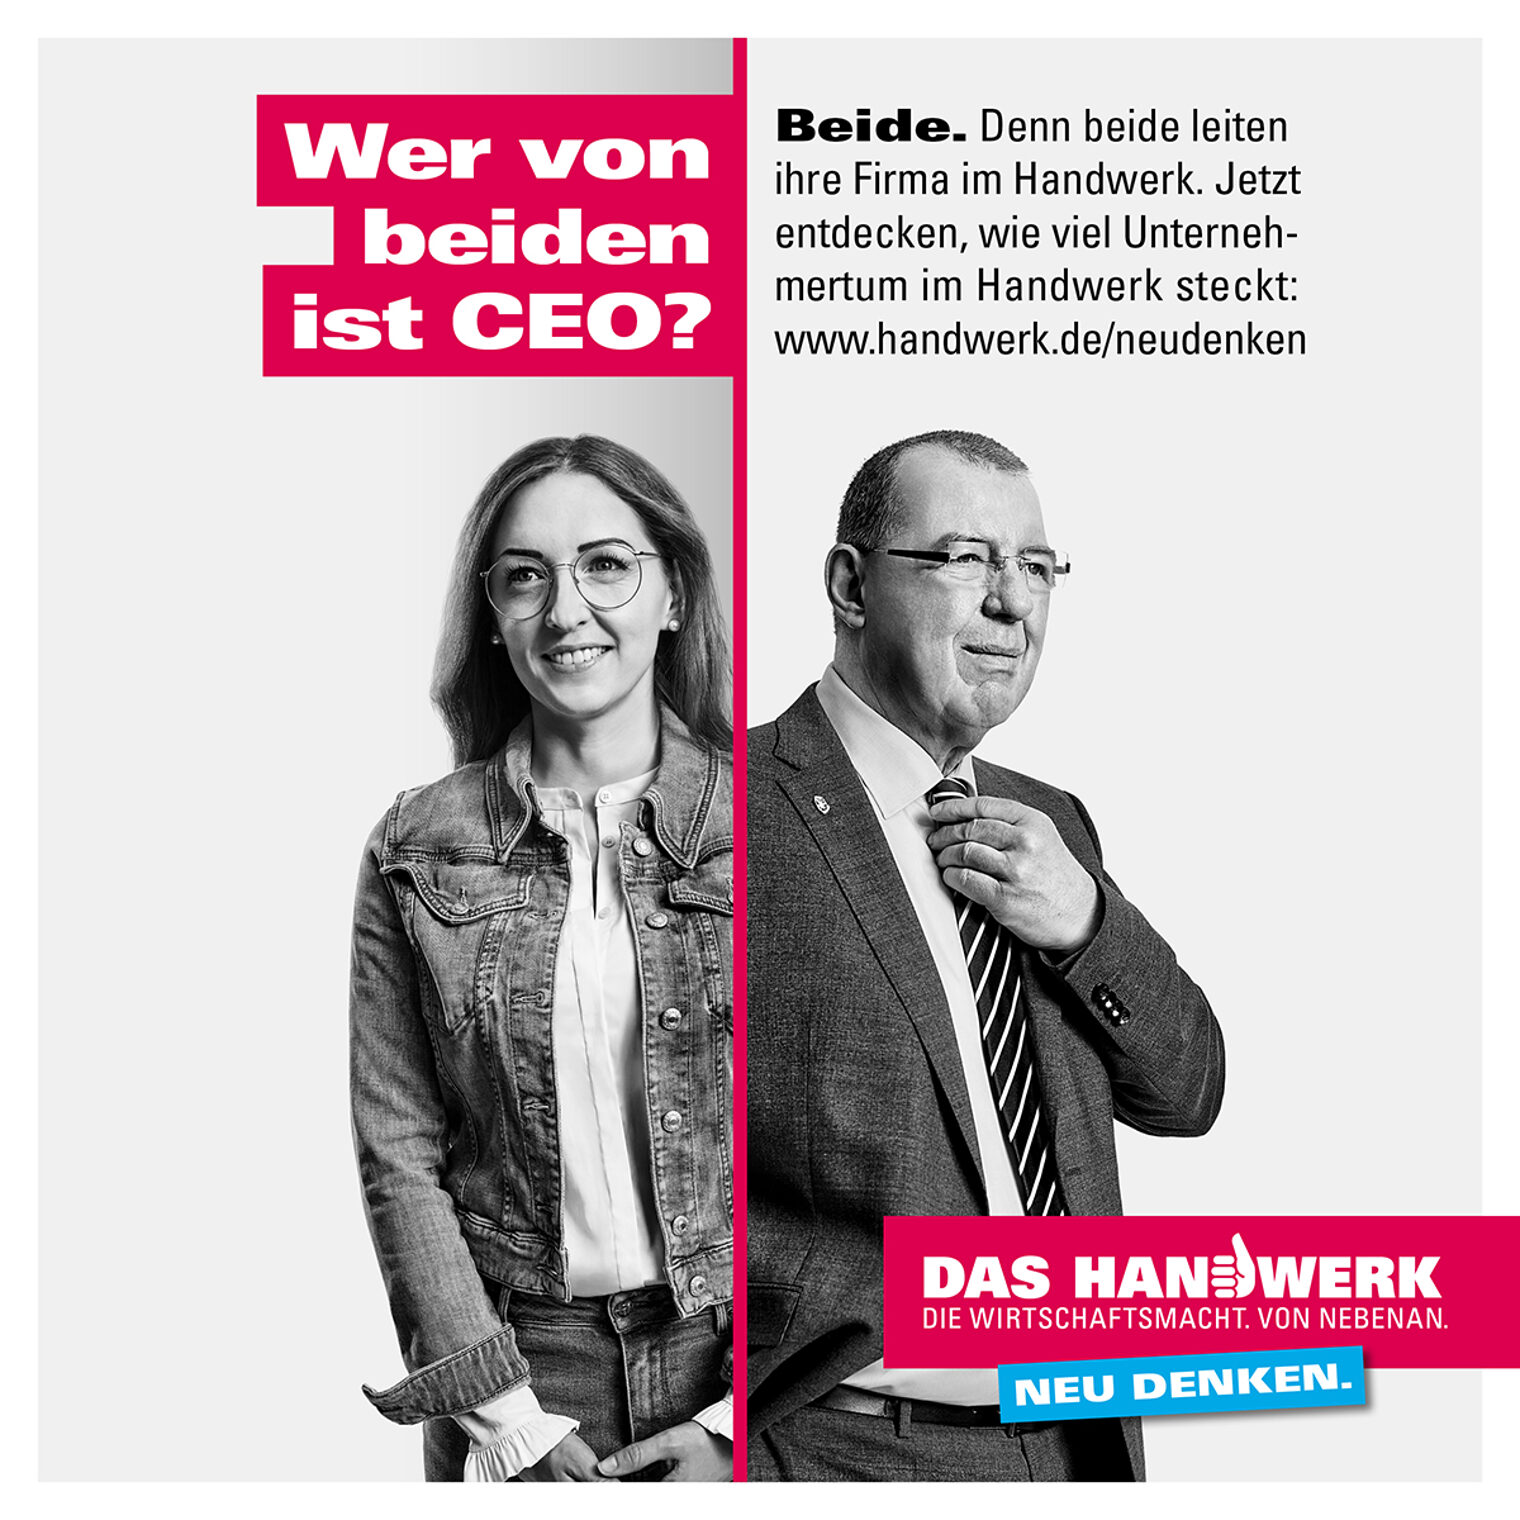 Wer von beiden ist CEO? Beide.